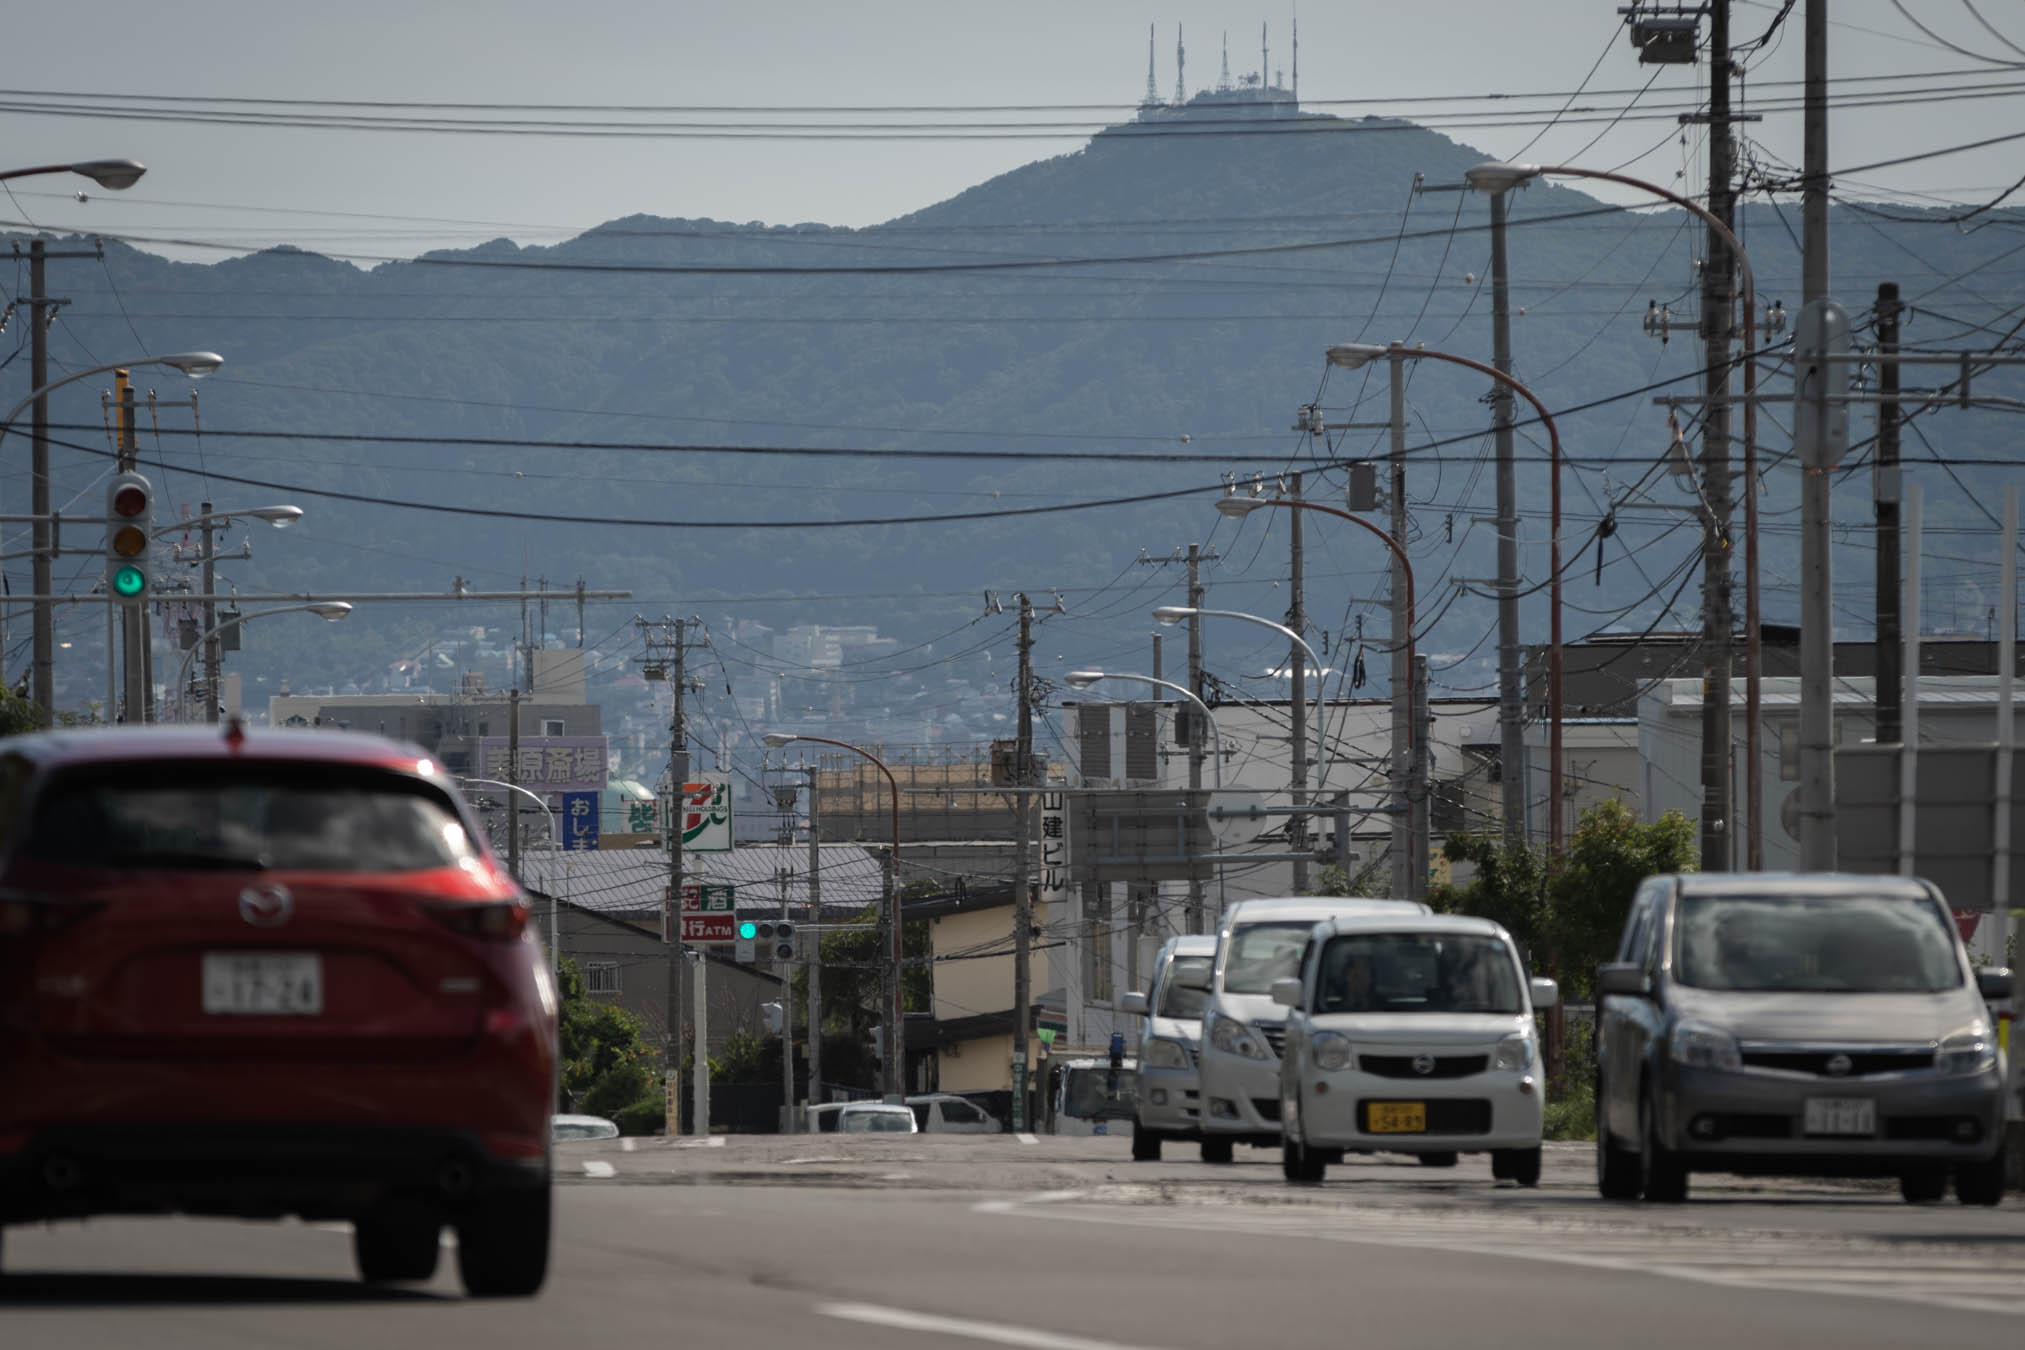 赤川1丁目交差点の風景と遠景の函館山